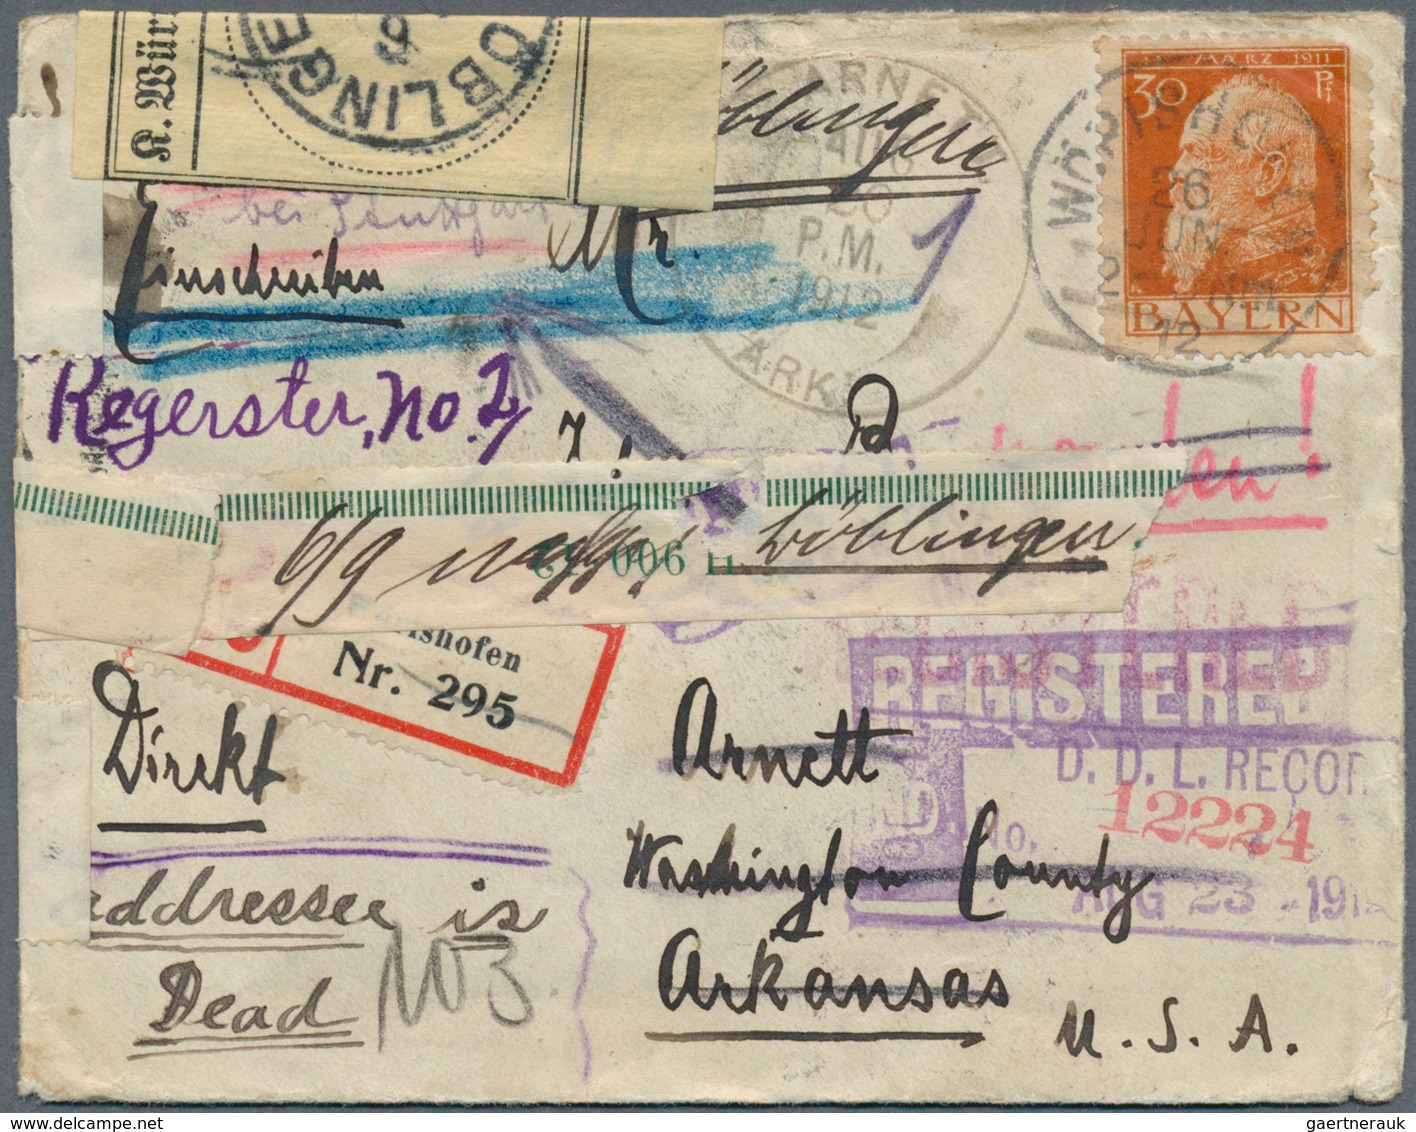 29330 Nachlässe: Uriger Briefe-Nachlass mit Schwerpunkt Deutschland, dabei viel Behördenpost, Portostufen,